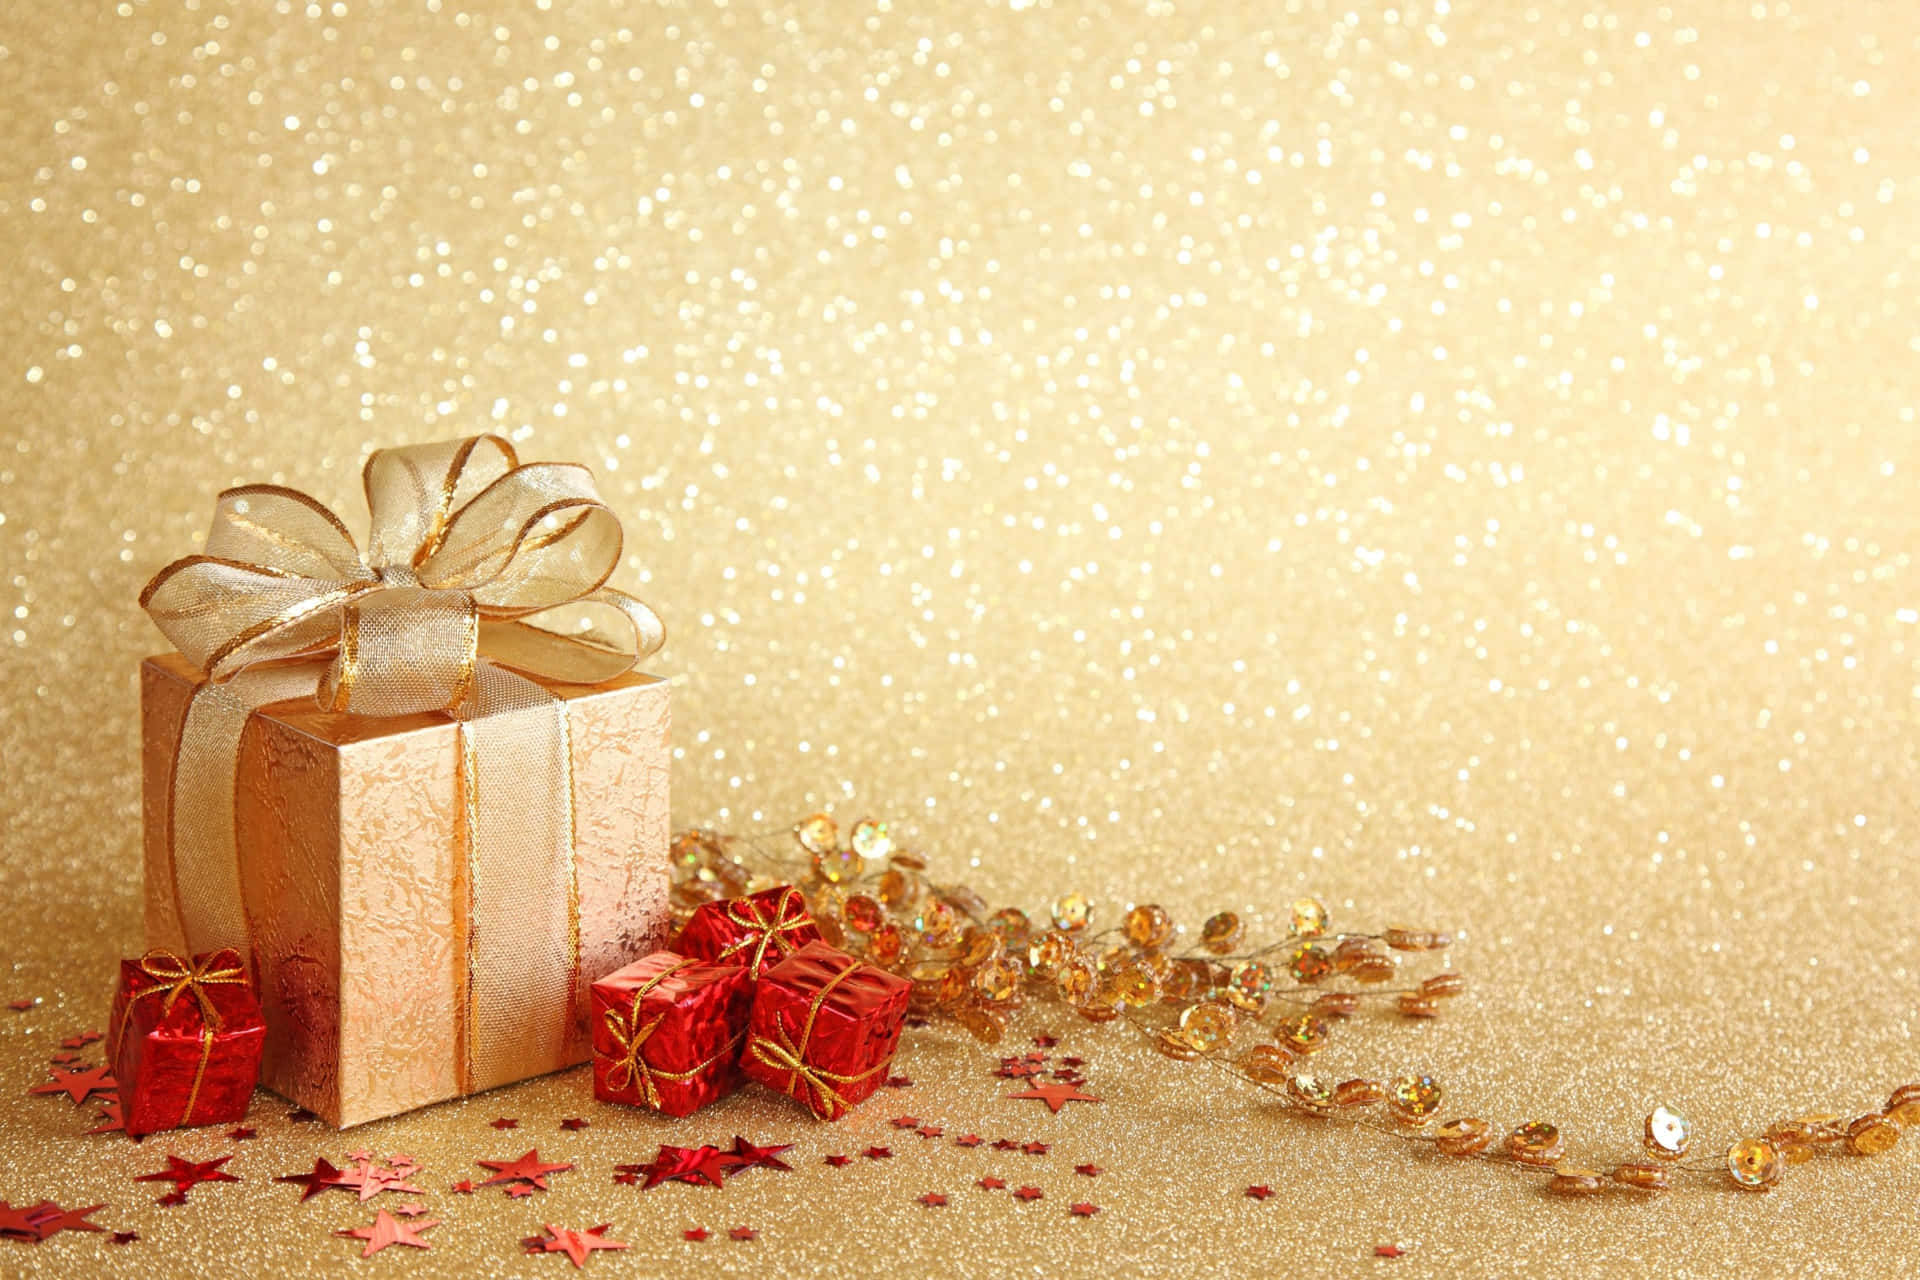 Goldeneund Rote Weihnachtsgeschenke Mit Glitzerbild